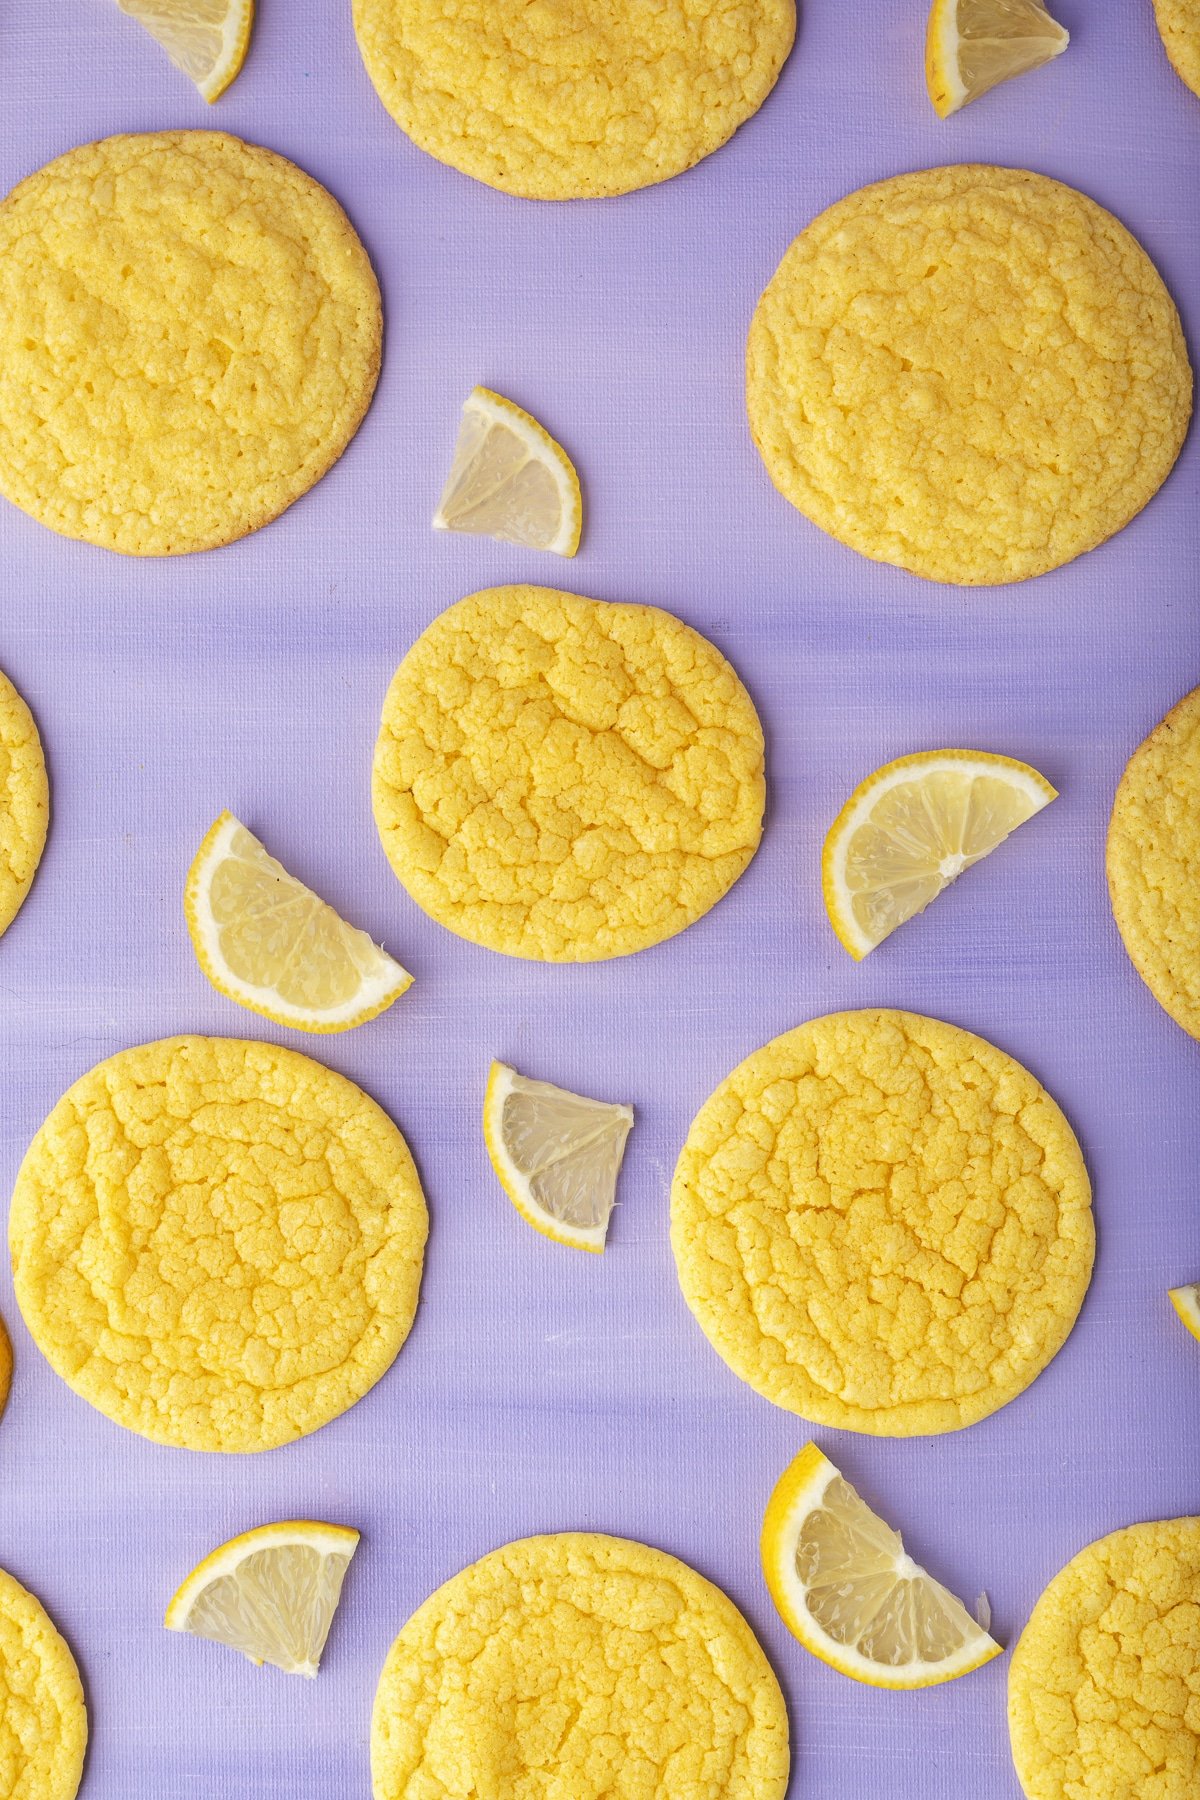 lemon cookies and lemon on purple table.